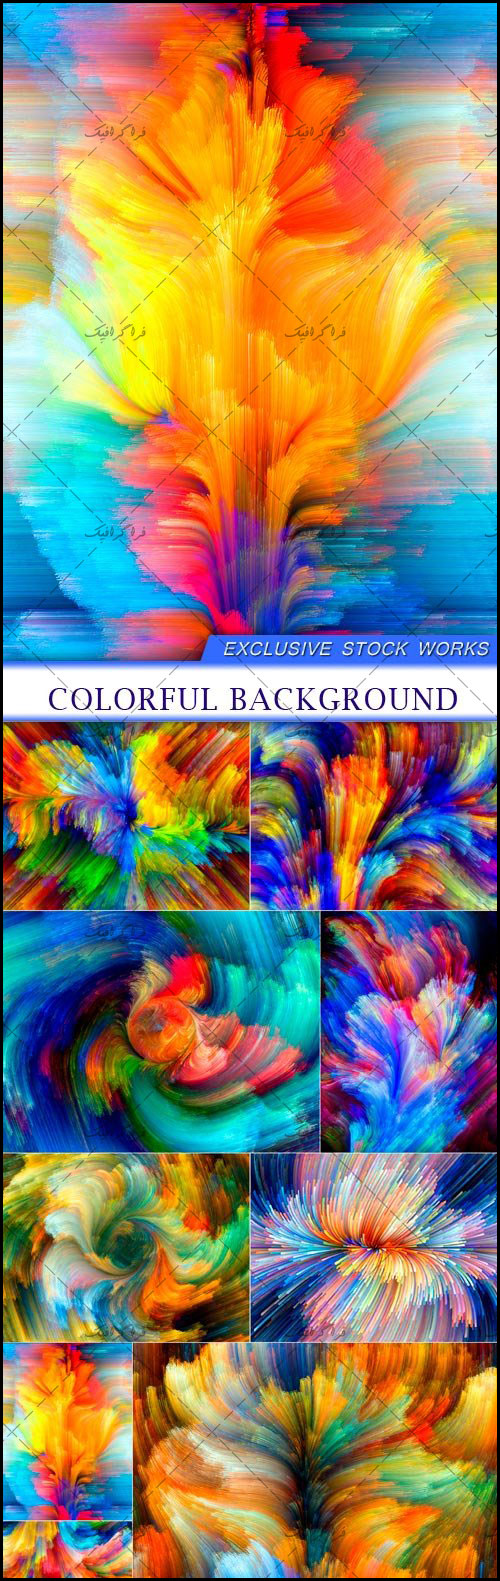 دانلود تکسچر های رنگارنگ - Colorful Textures